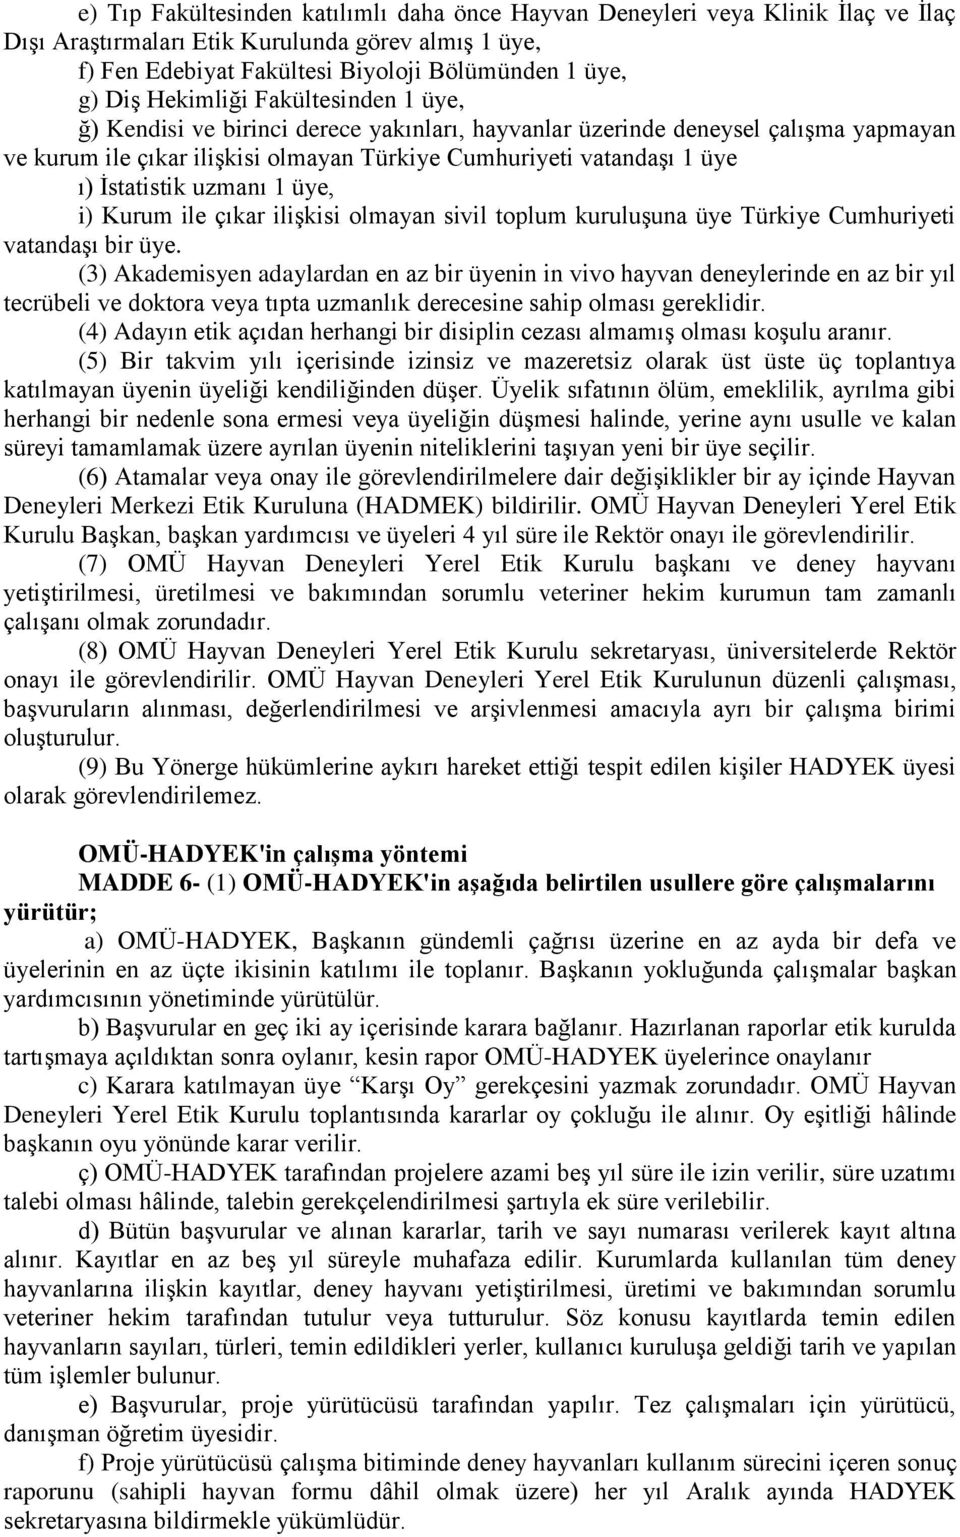 İstatistik uzmanı 1 üye, i) Kurum ile çıkar ilişkisi olmayan sivil toplum kuruluşuna üye Türkiye Cumhuriyeti vatandaşı bir üye.